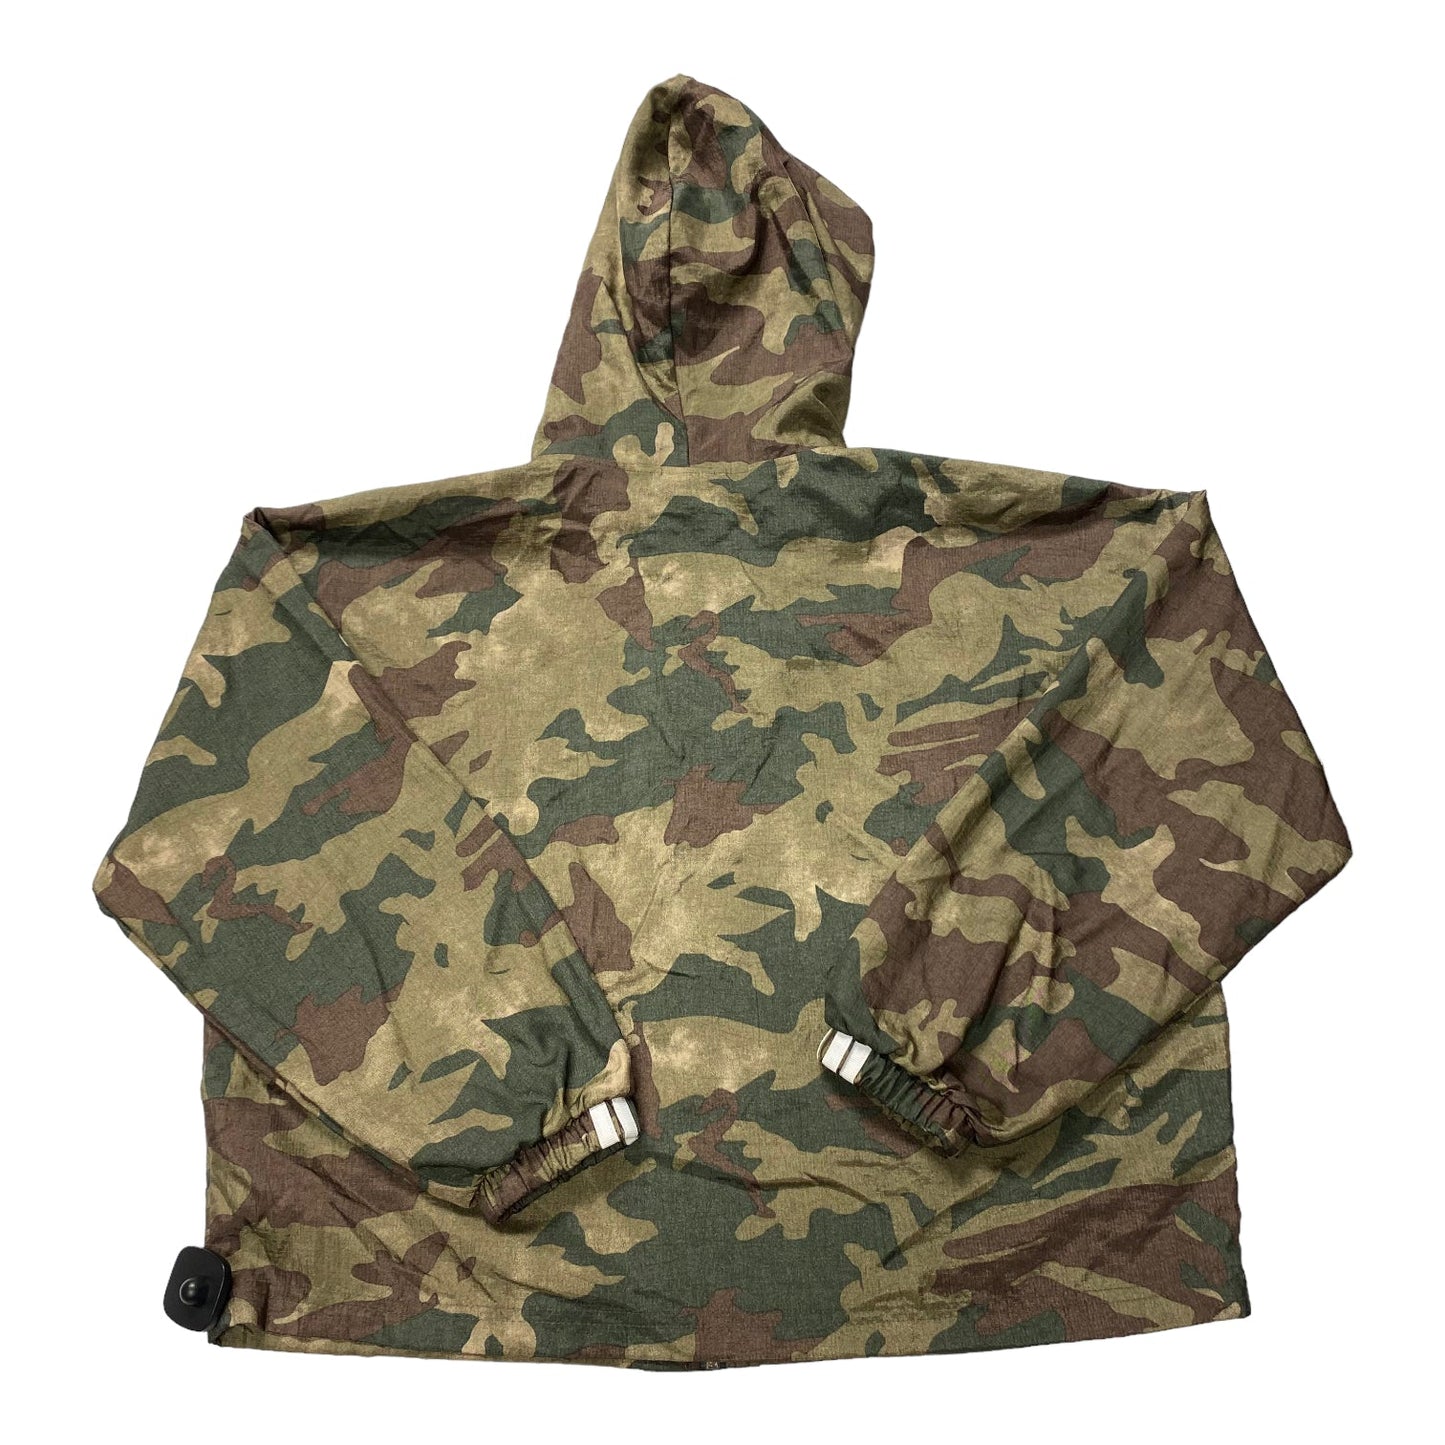 Camouflage Print Athletic Jacket Adidas, Size M